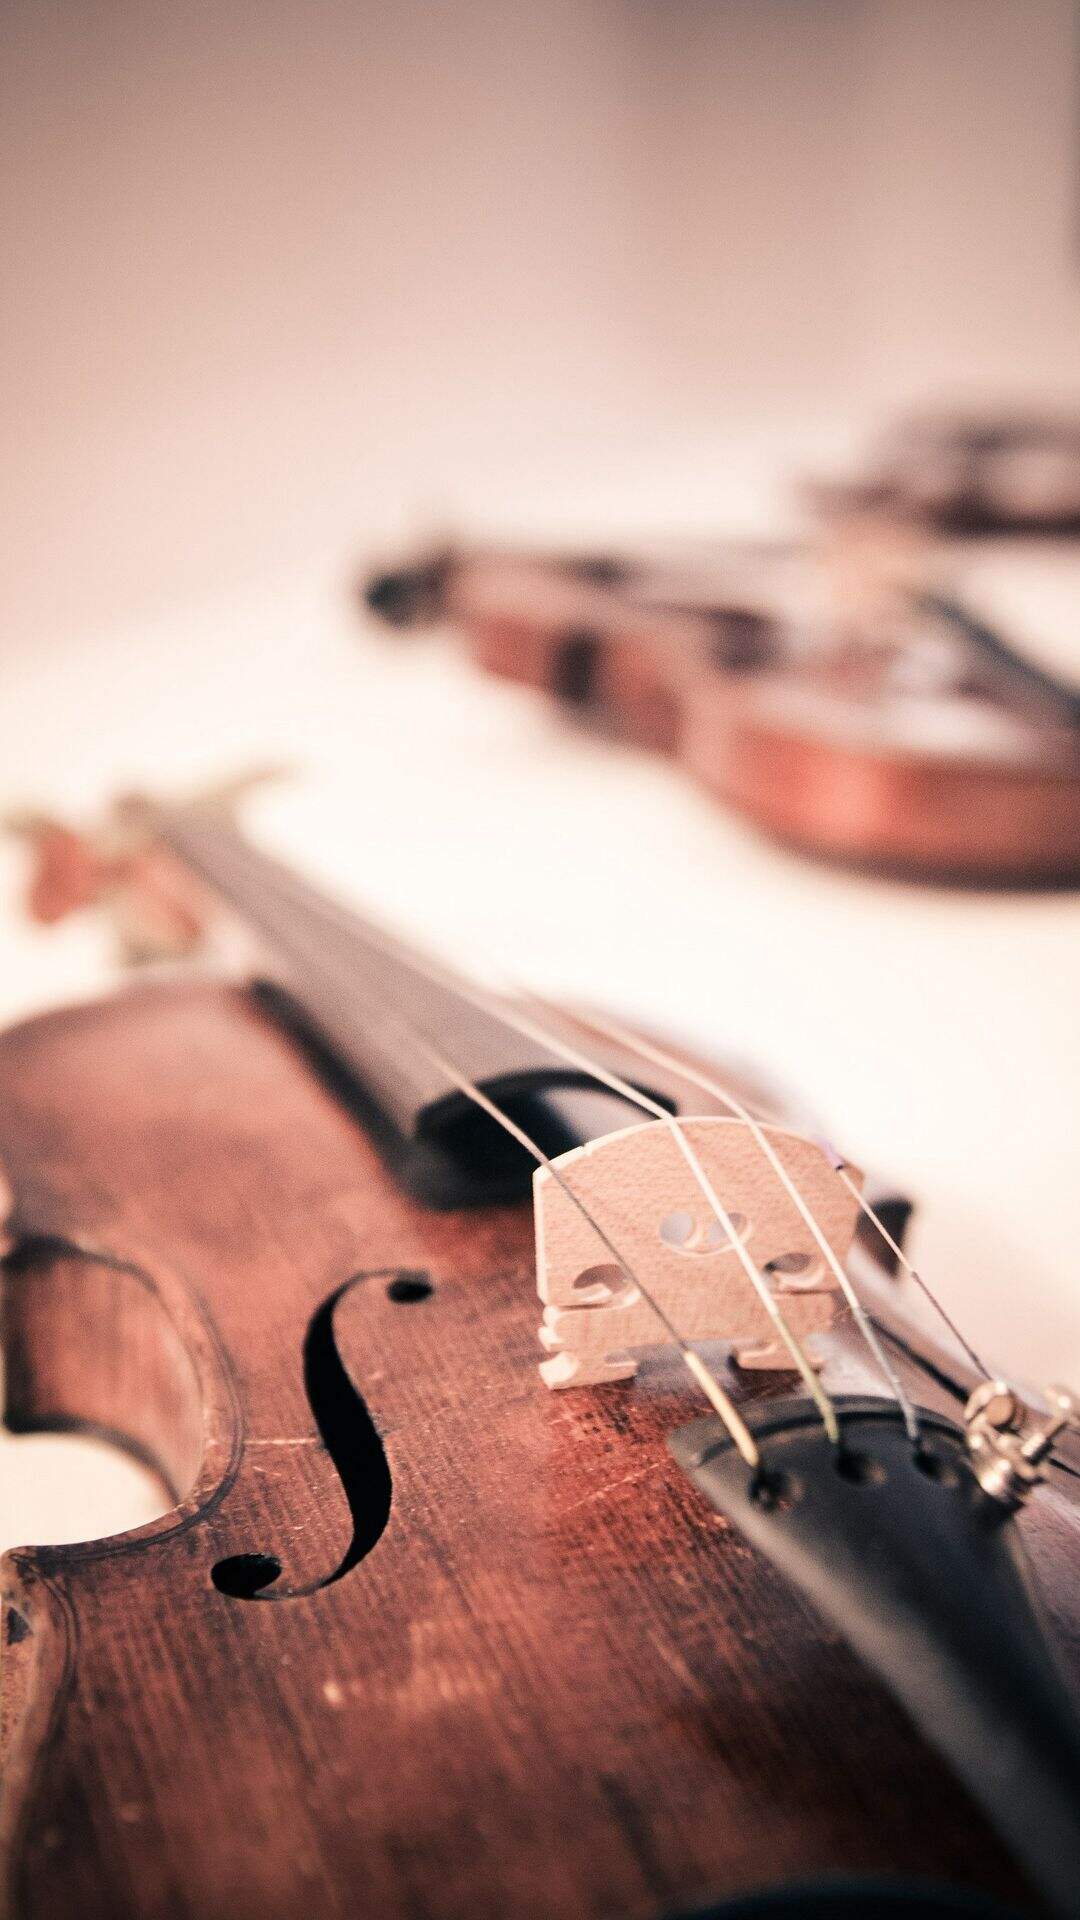 小提琴 大提琴 唯美乐器非主流手机壁纸图片套图1